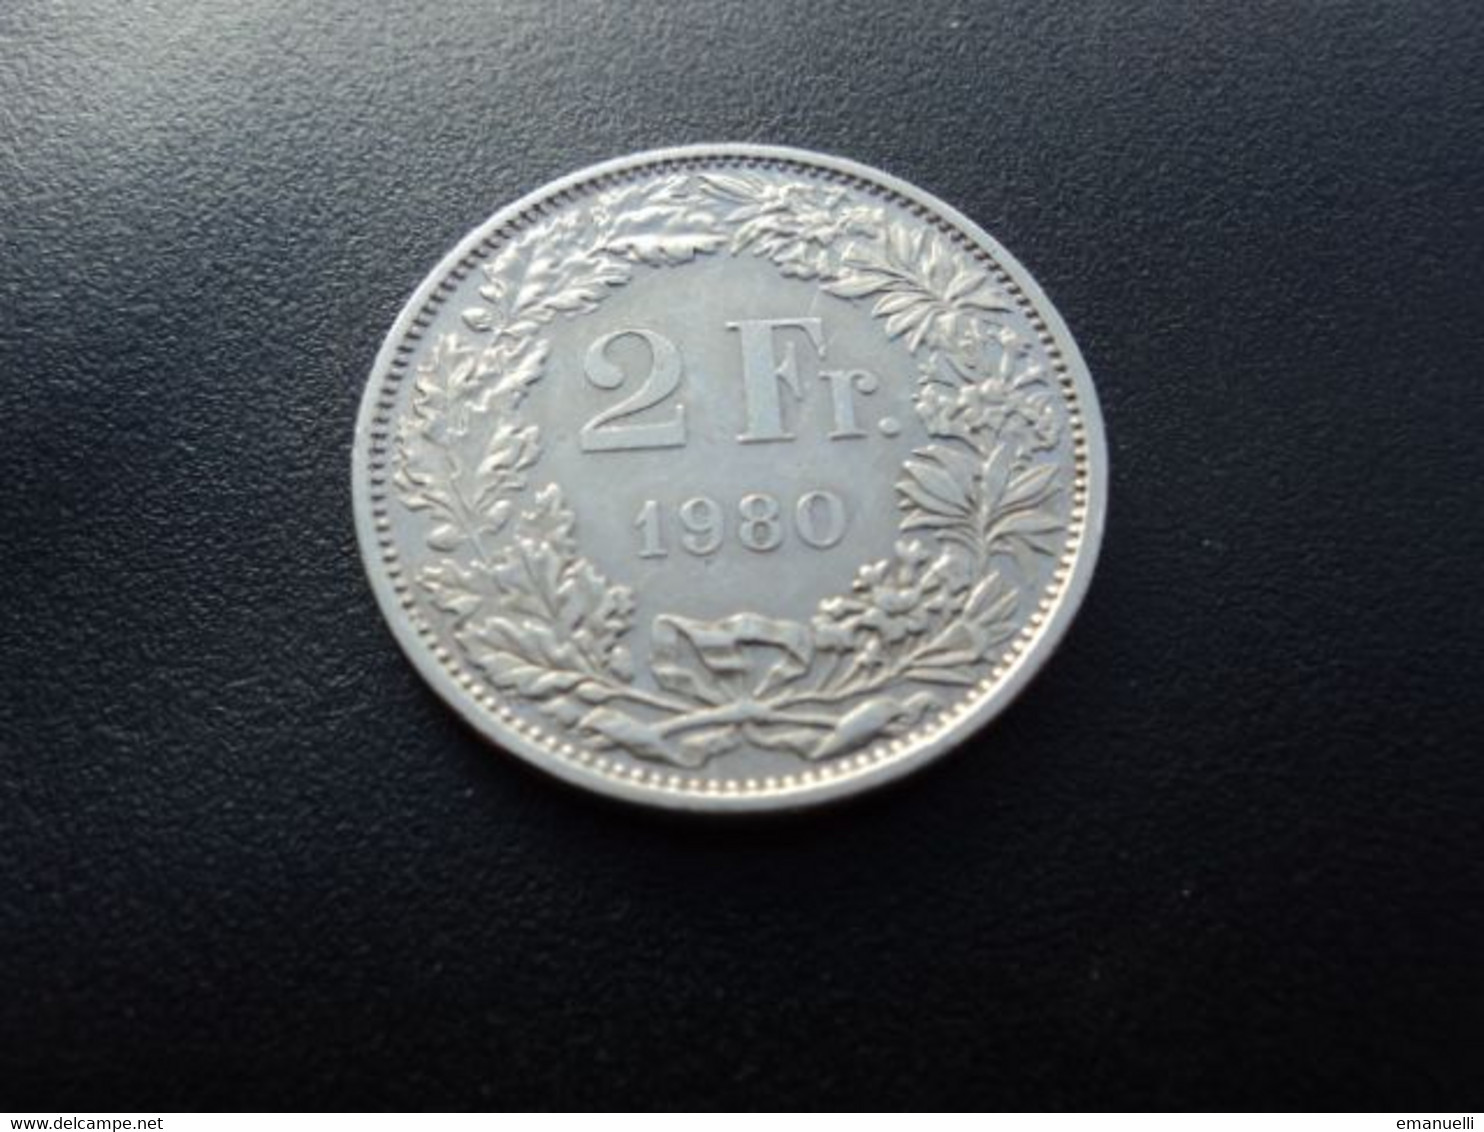 SUISSE : 2 FRANCS  1980    KM 21a.1      SUP - 2 Francs